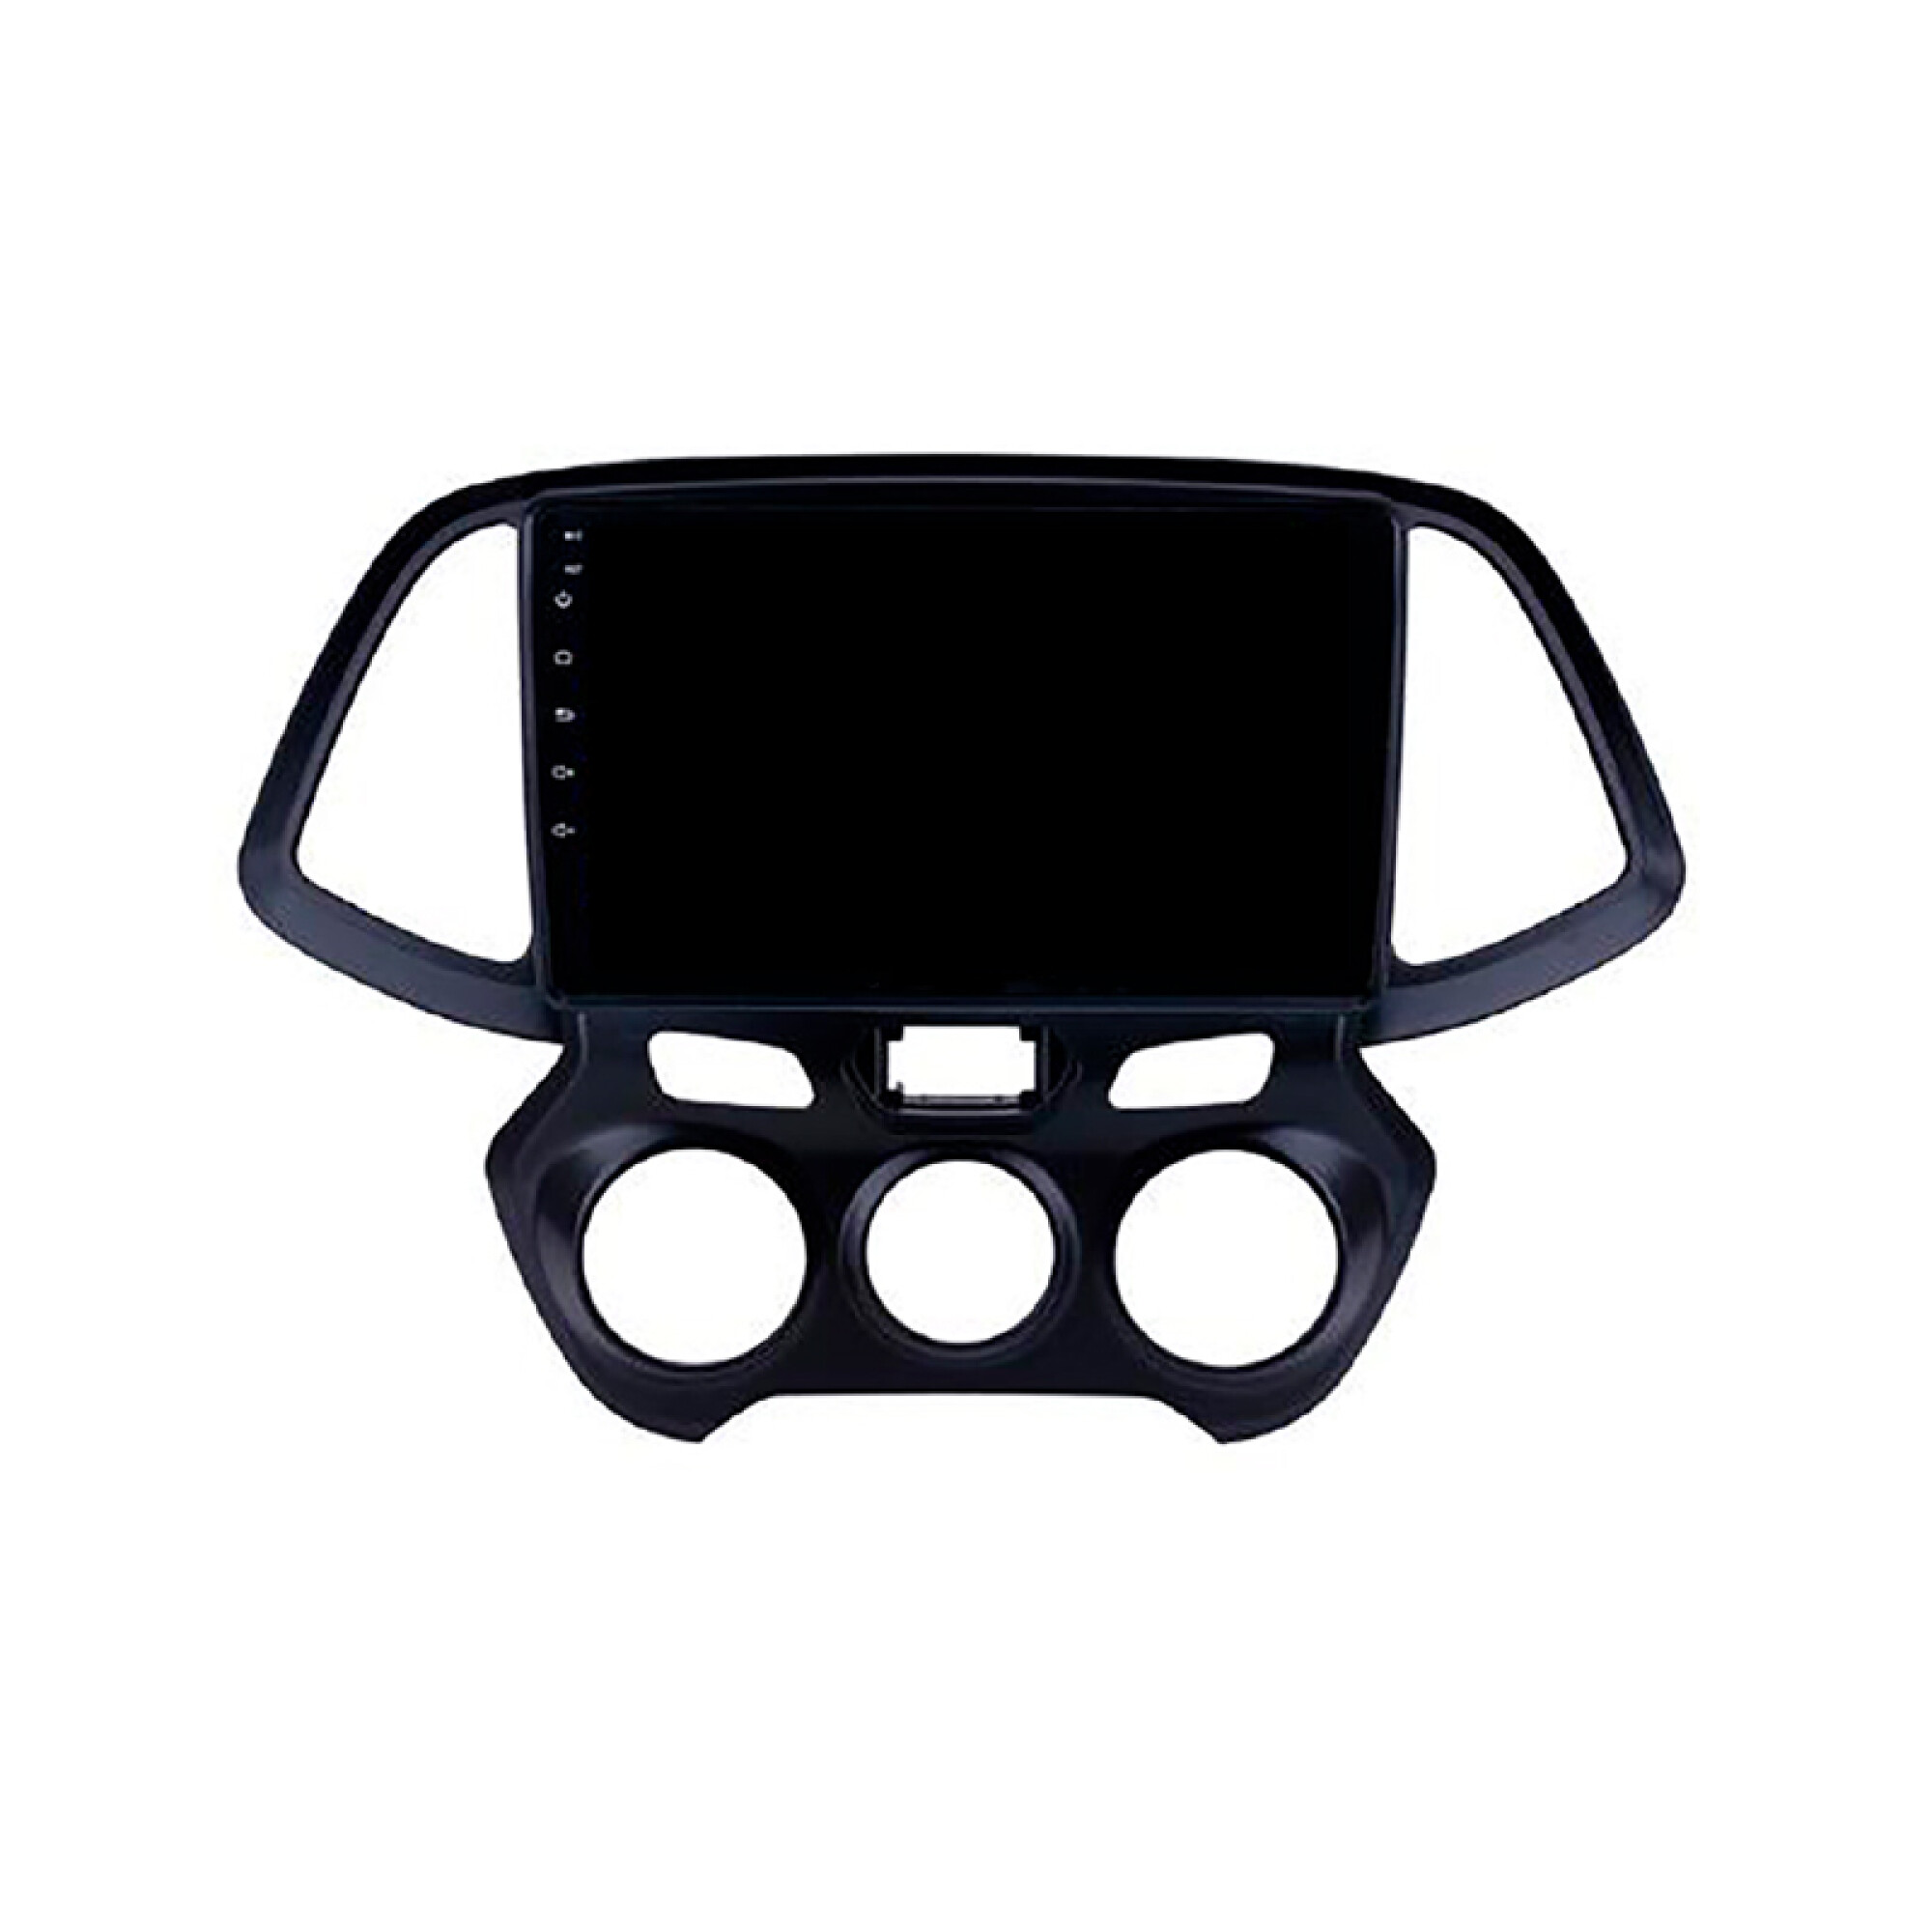 Radio Multimedia Apeple Carplay Y Android Auto Universal Pantalla